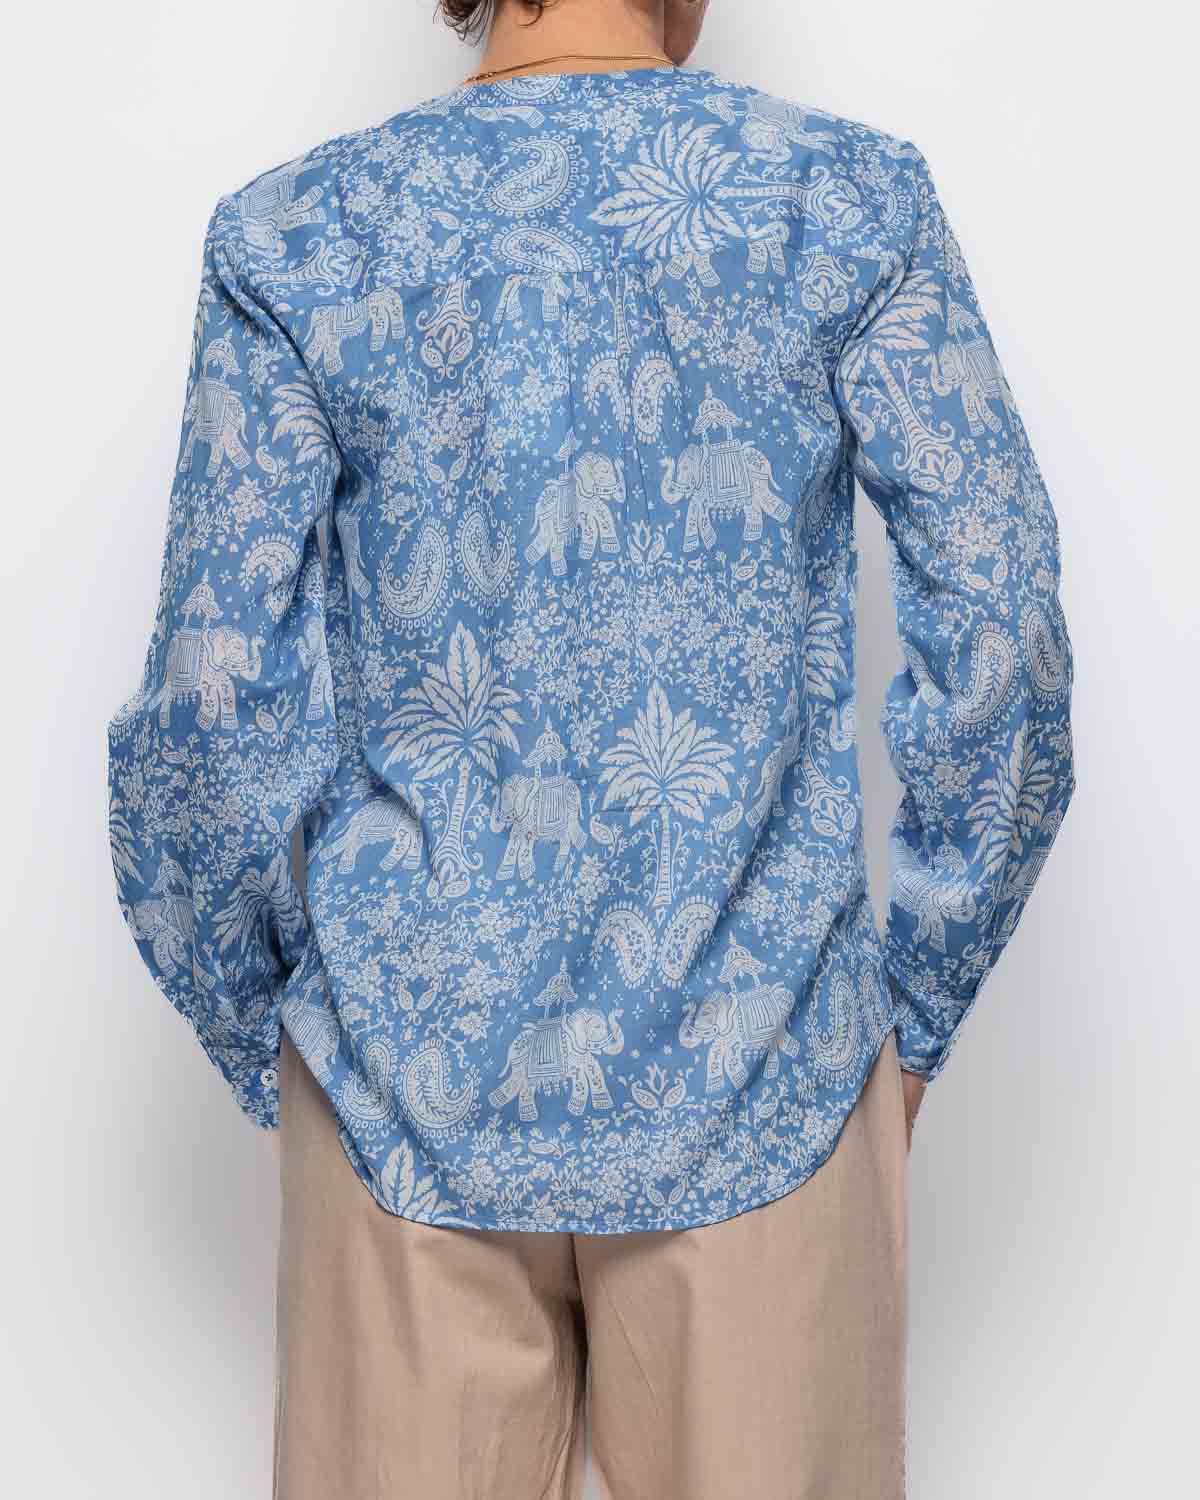 Hartford Colette Shirt in Blue Elephant Print